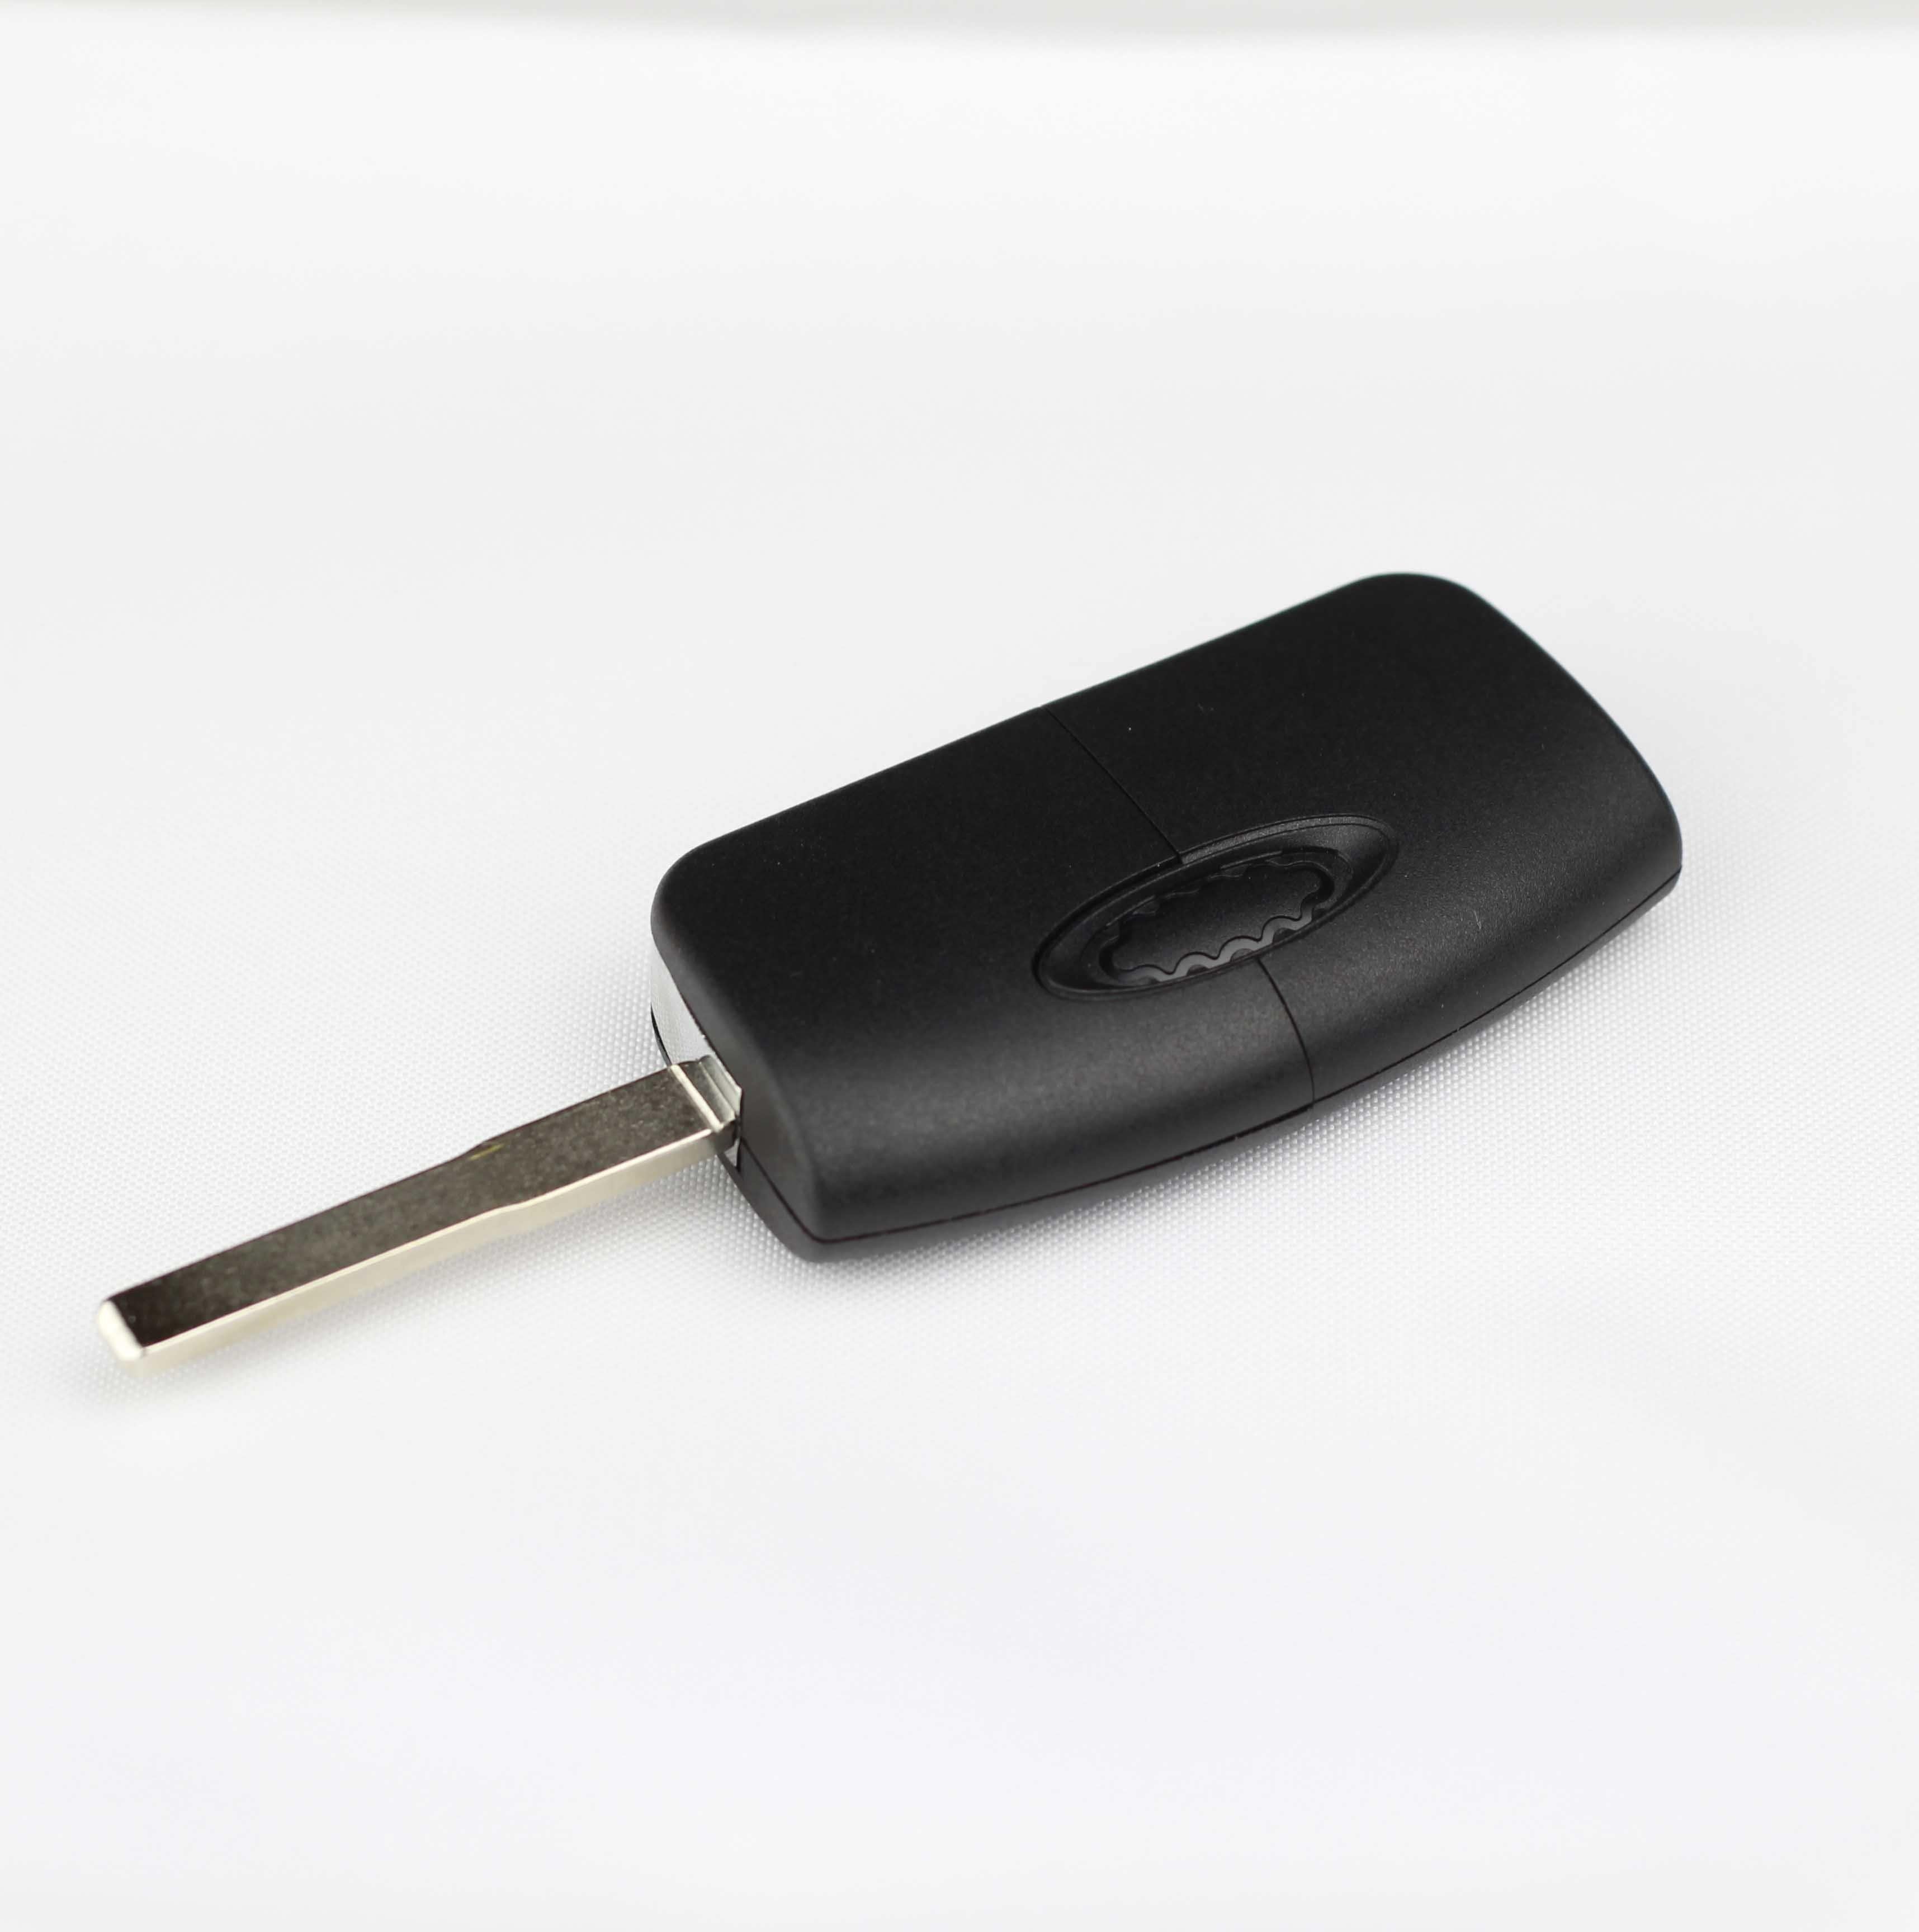 Fekete színű, 3 gombos Ford kulcs, bicskakulcs hátulja. HU101 kulcsszárral.